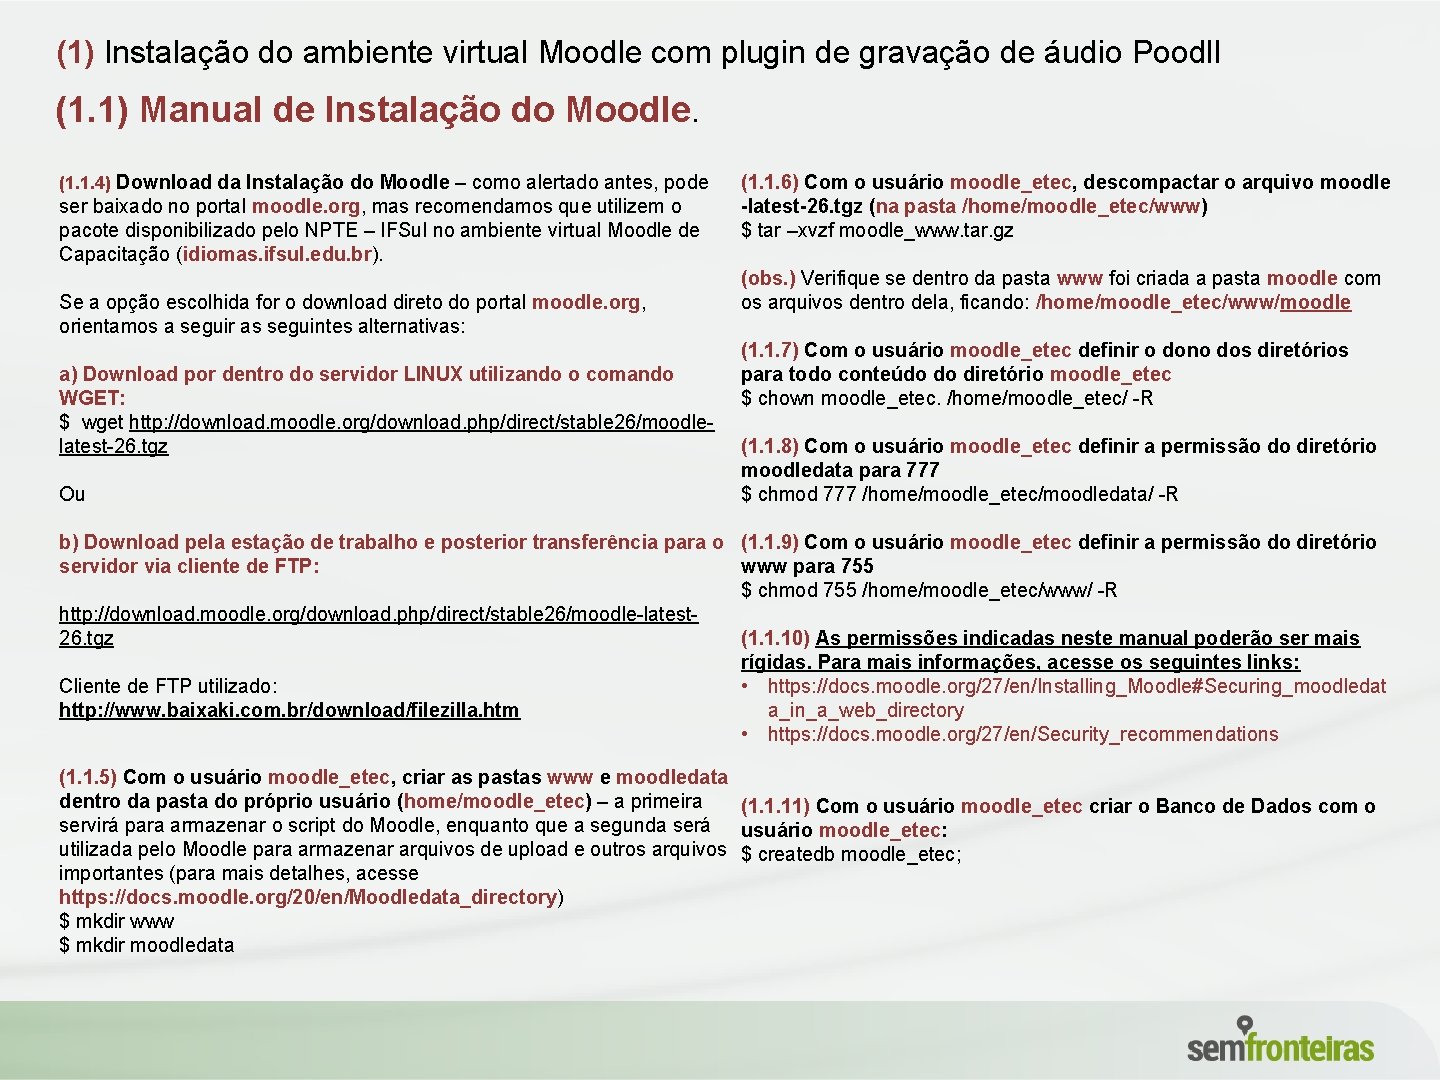 (1) Instalação do ambiente virtual Moodle com plugin de gravação de áudio Poodll (1.